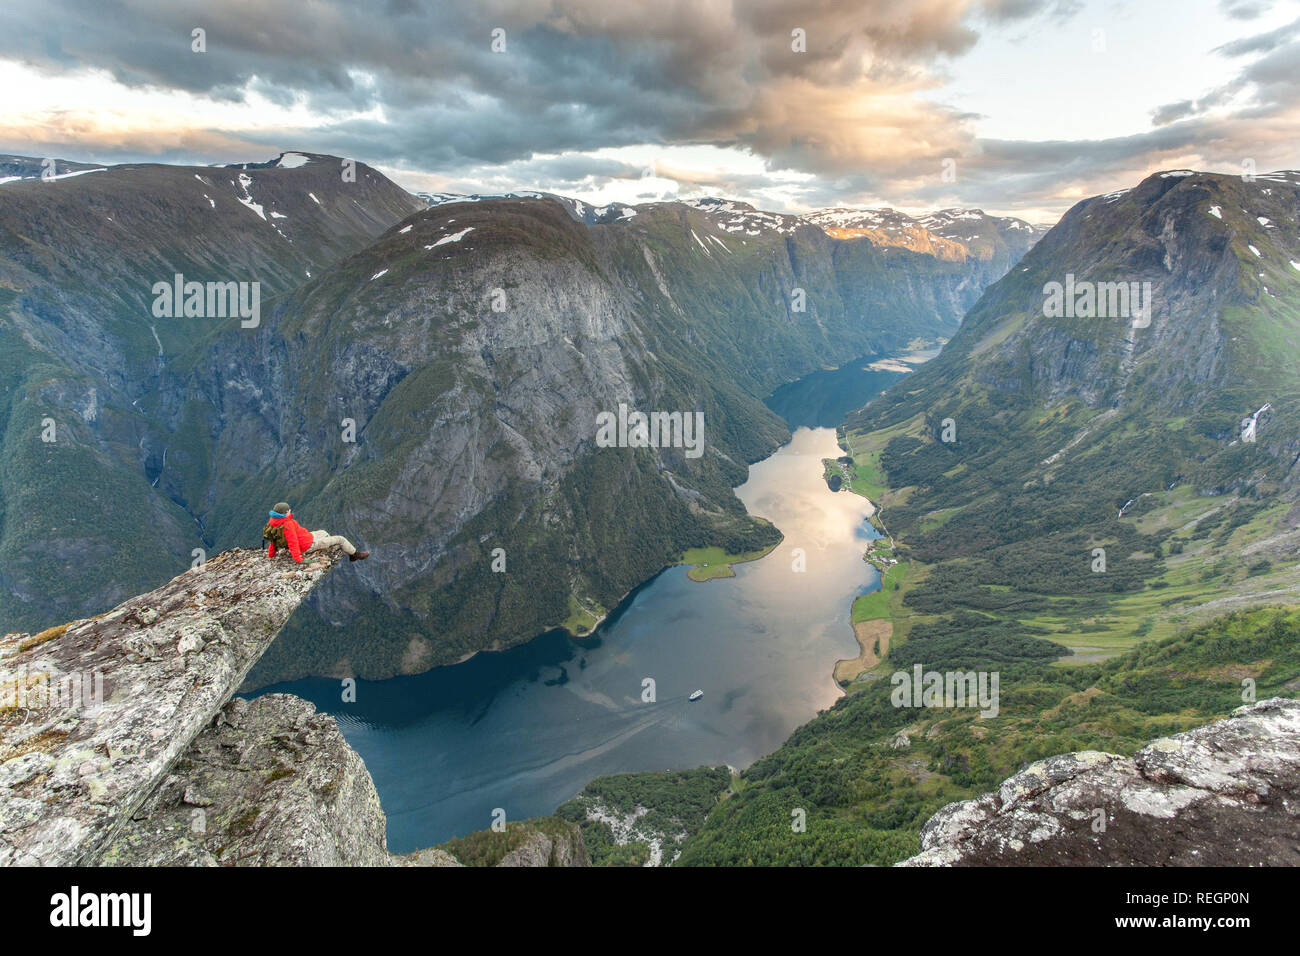 Un Randonneur admirant la vue magnifique d'un fjord norvégien près de Gudvangen. Unesco World Heritage Site de Naeroyfjord, la Norvège. Banque D'Images